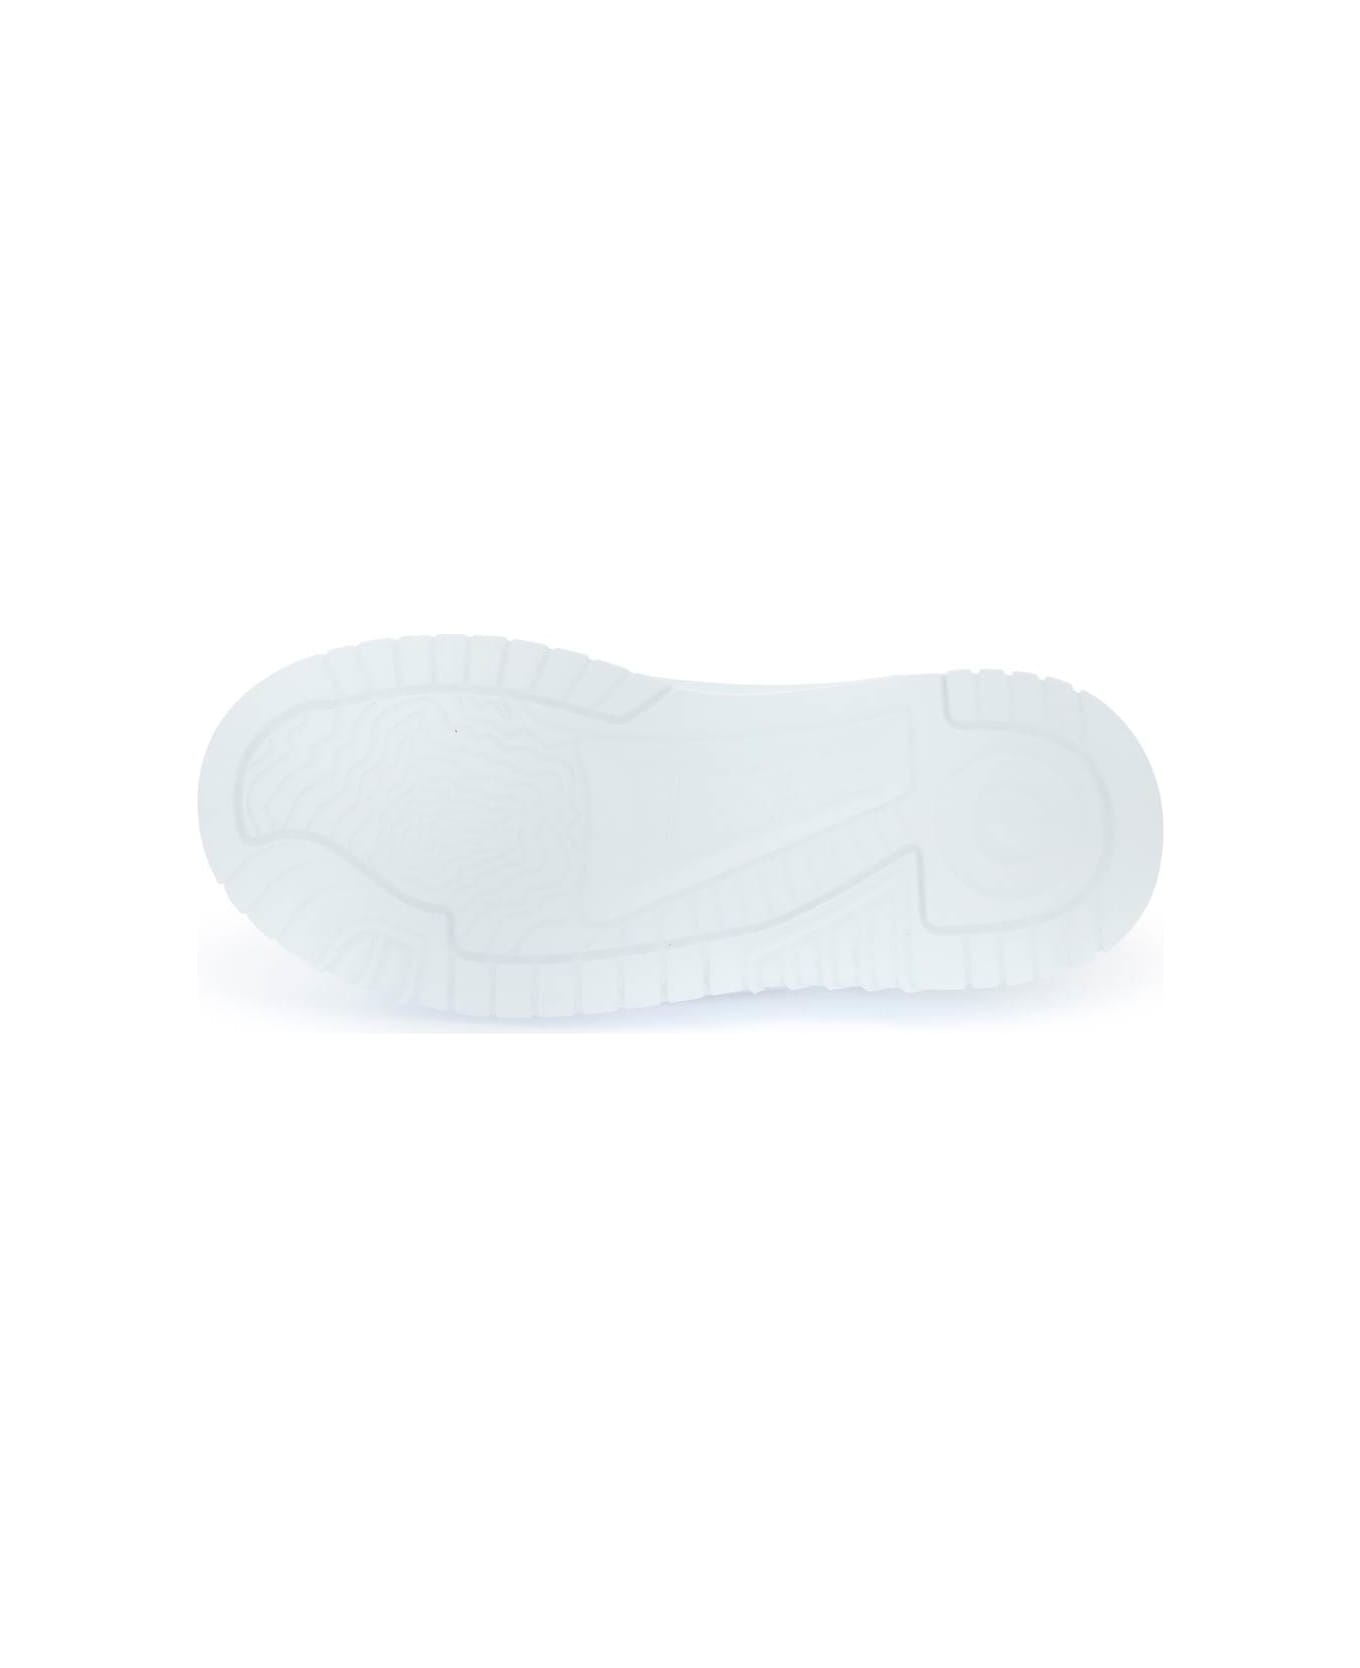 Versace Odissea Greca Sneakers - SILVER WHITE (White)